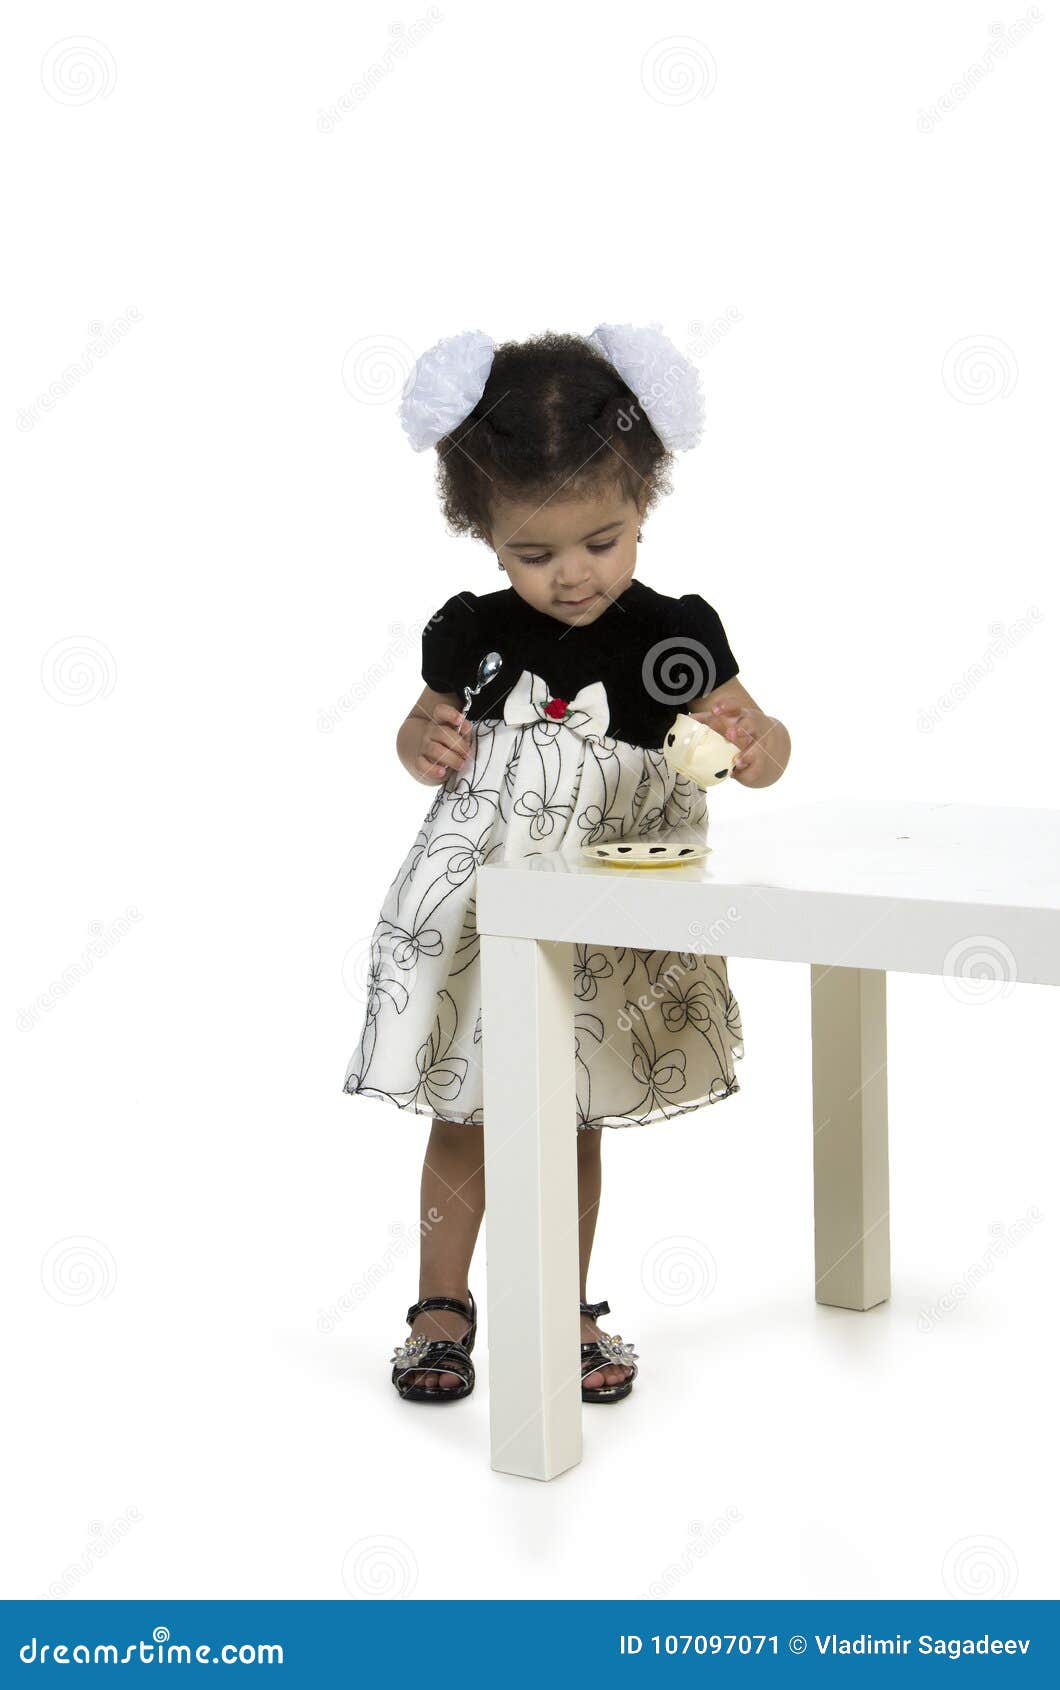 little girl table set